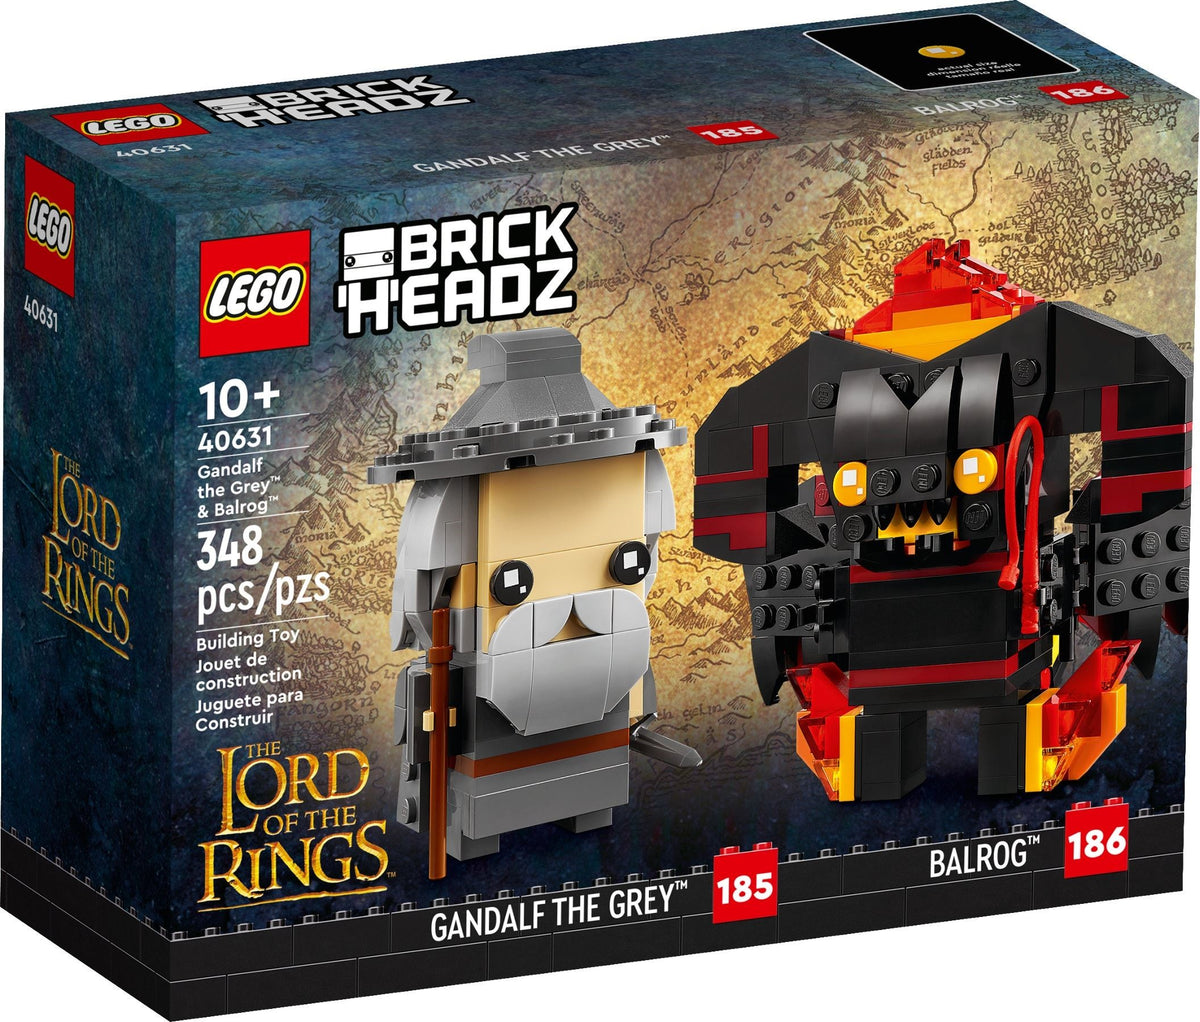 LEGO BrickHeadz Herr der Ringe 40631 Gandalf der Graue und Balrog